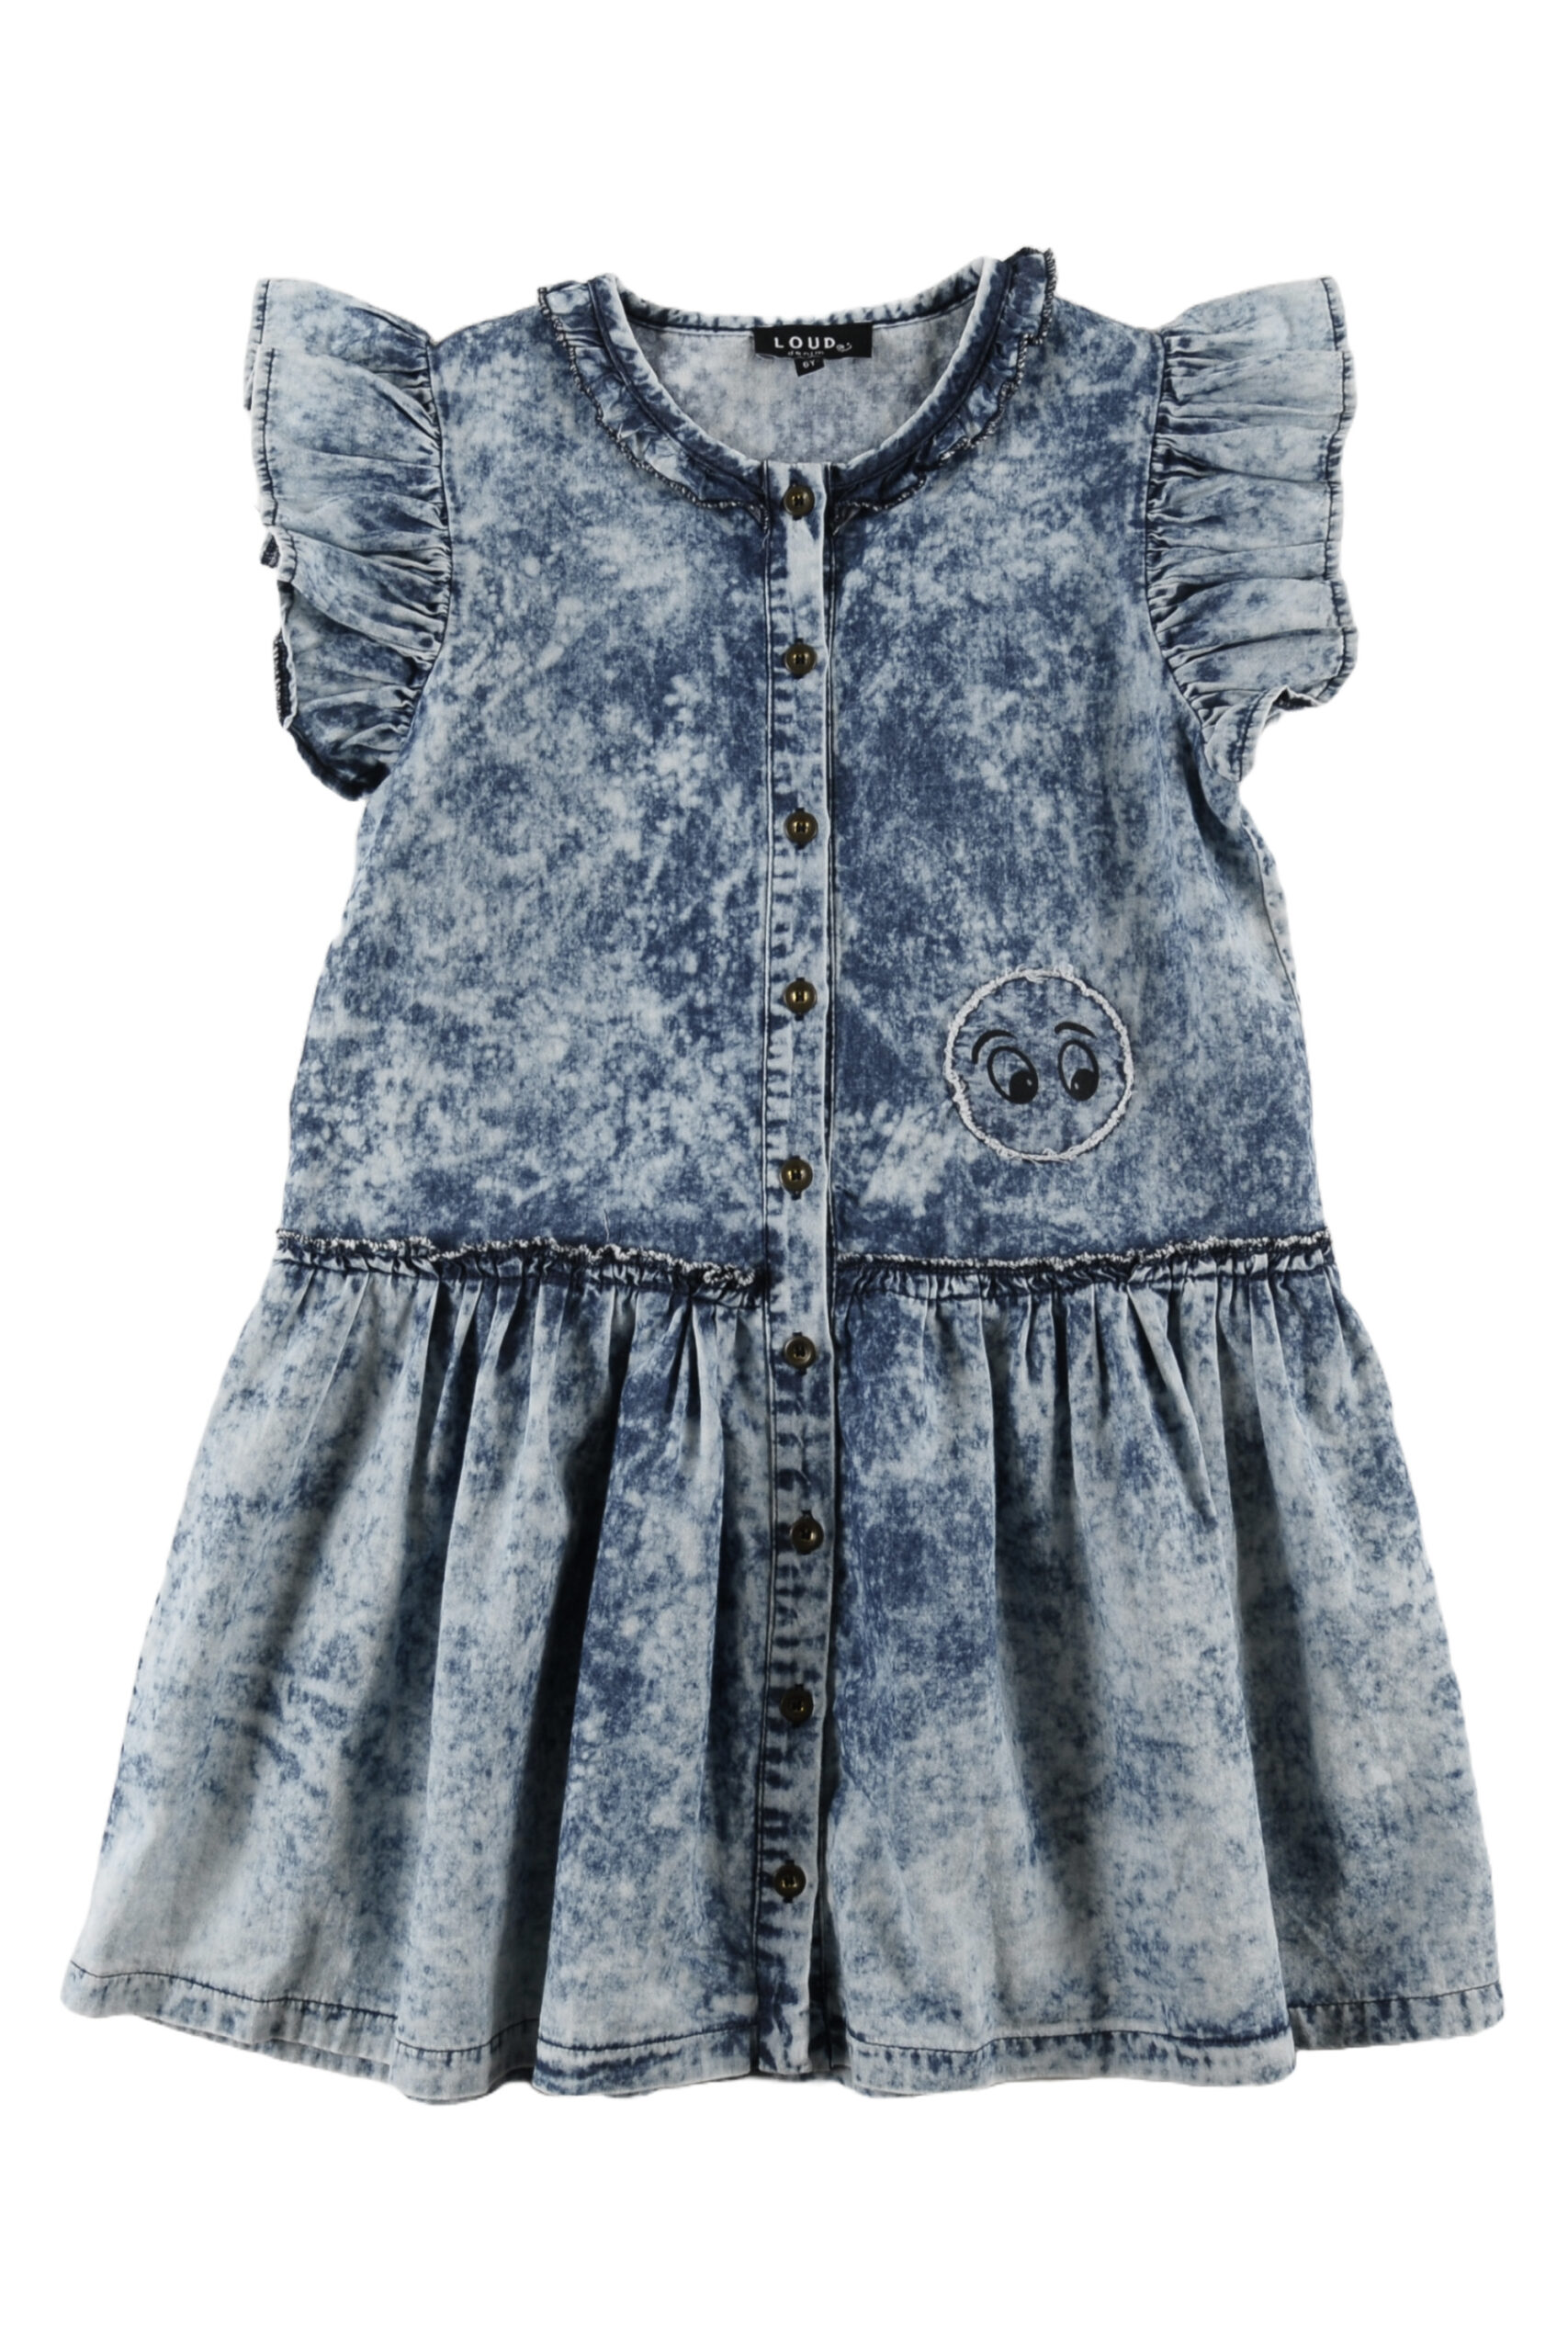 MOKU - Blue Dye Denim Dress Pinafore - Loud Apparel